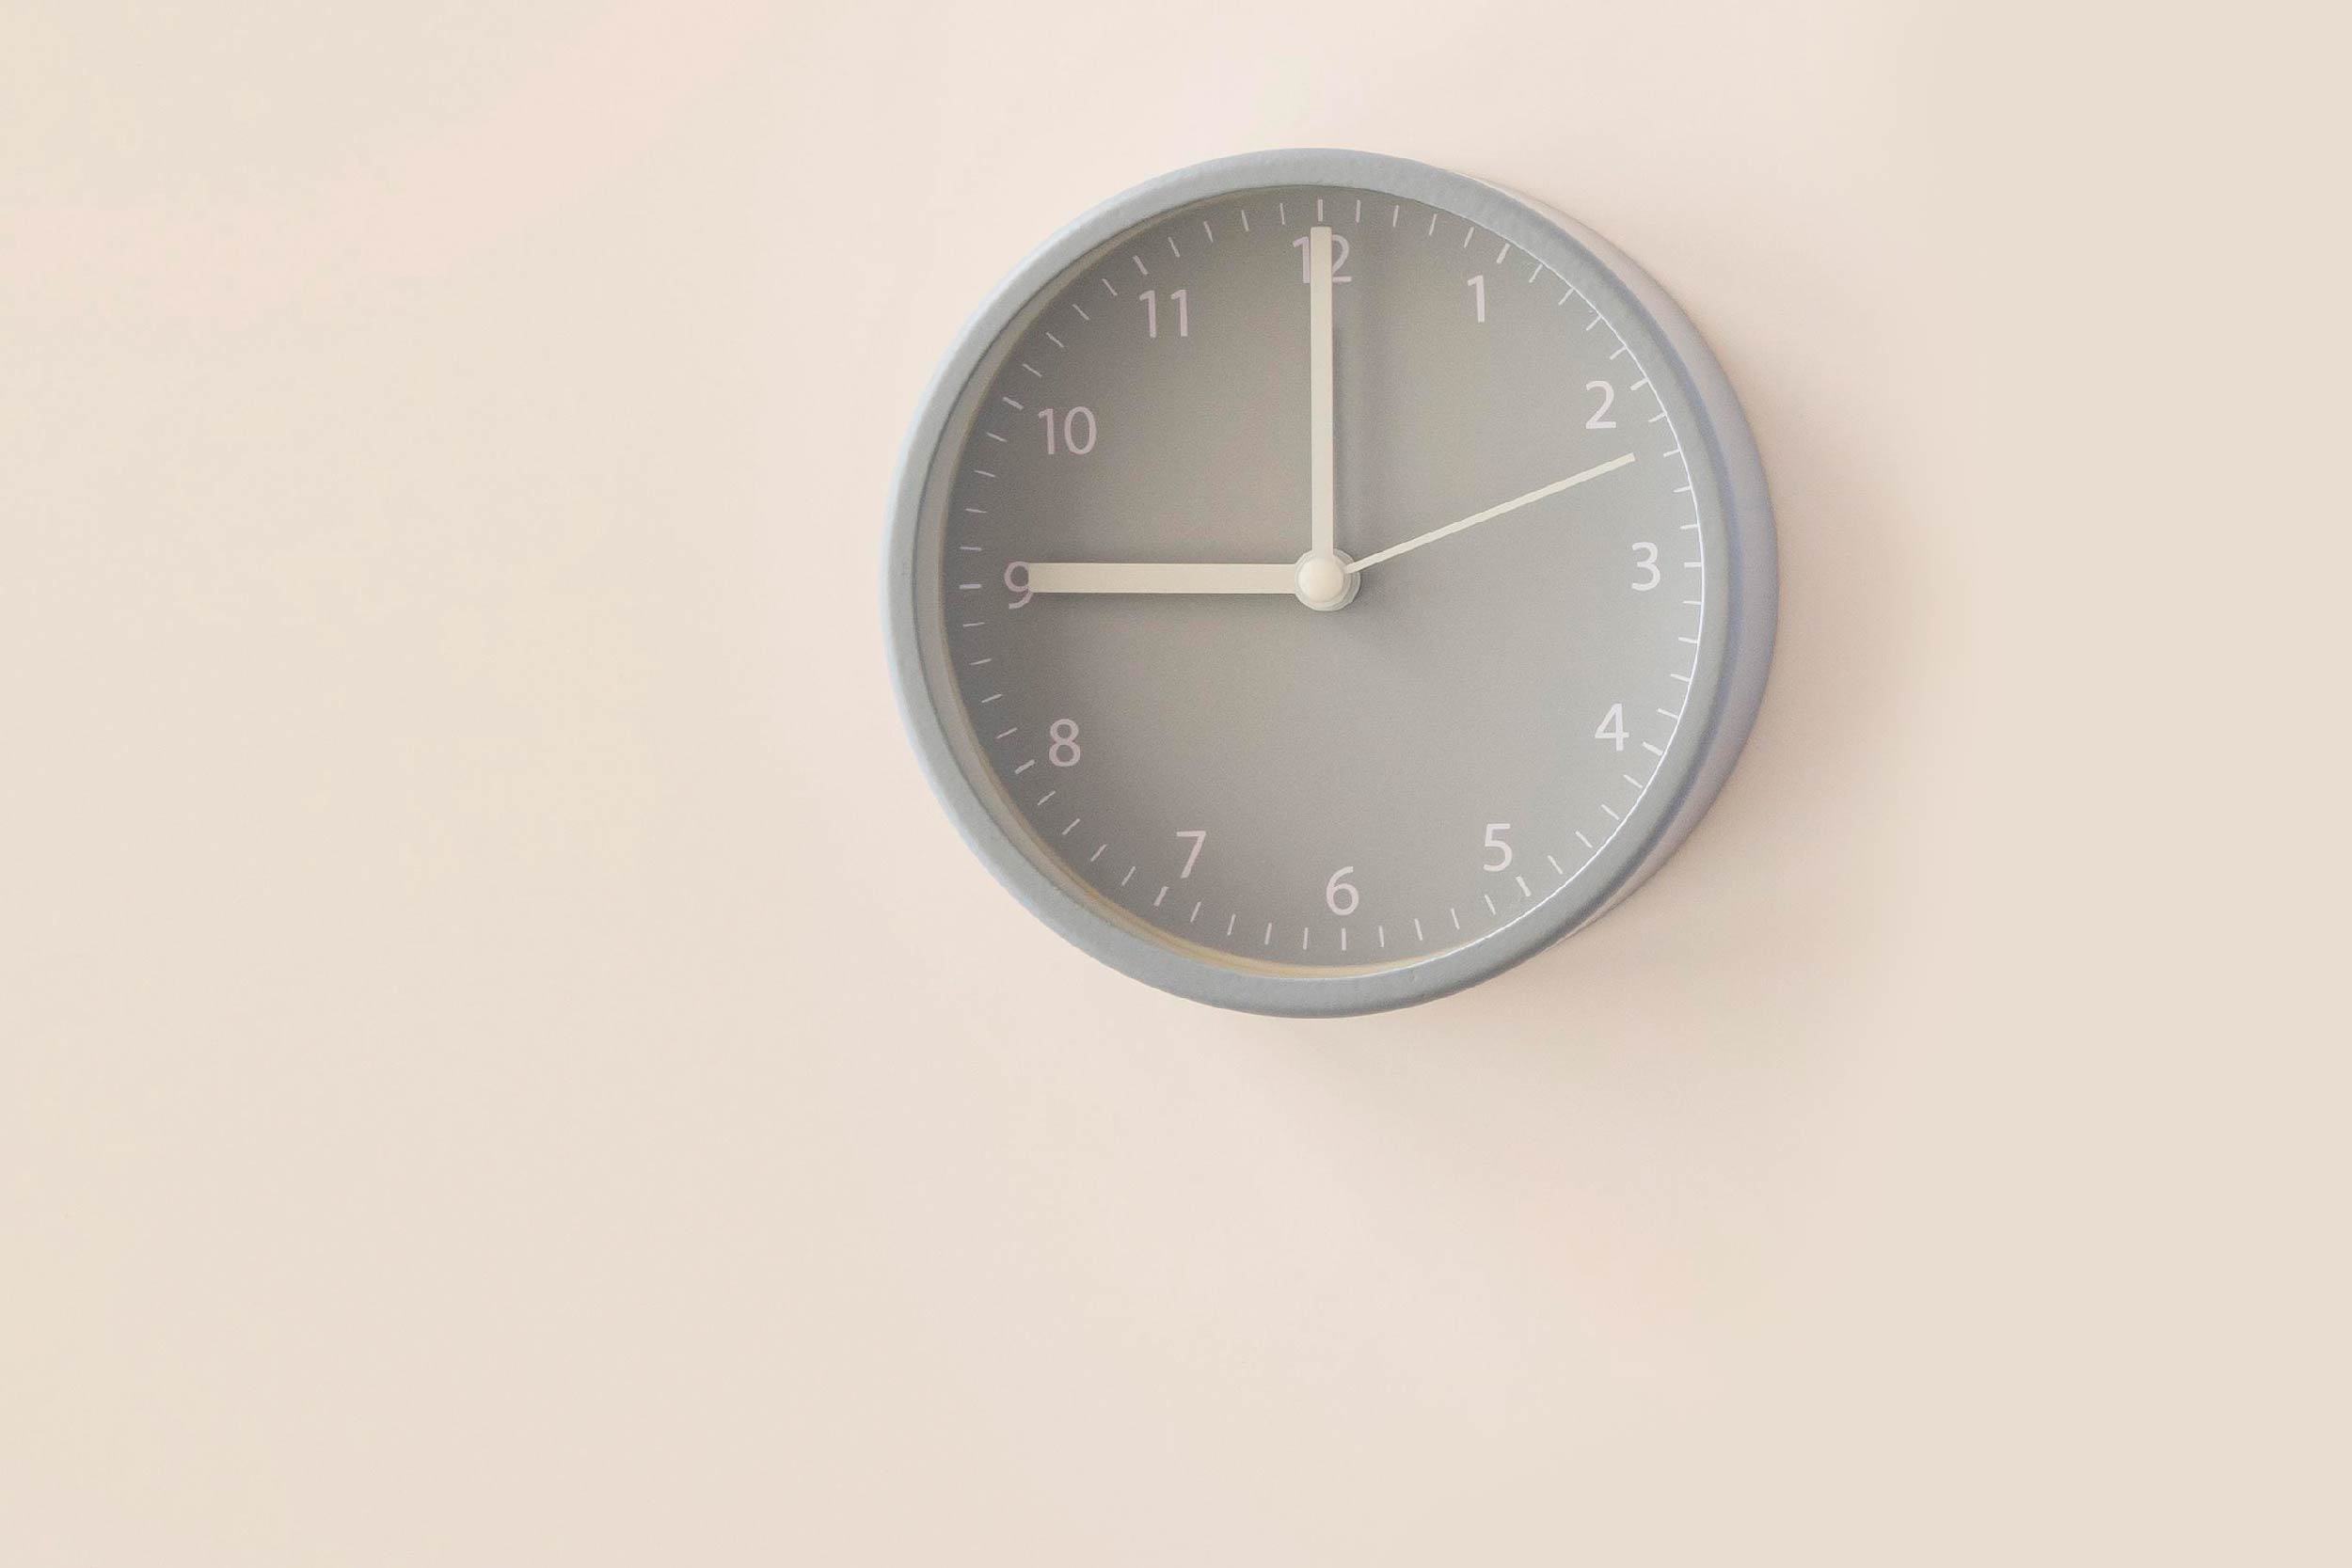 Imagem de um relógio de parede cinza, com ponteiros e numerais brancos. O relógio marca 9 horas e está afixado em uma parede de cor bege.